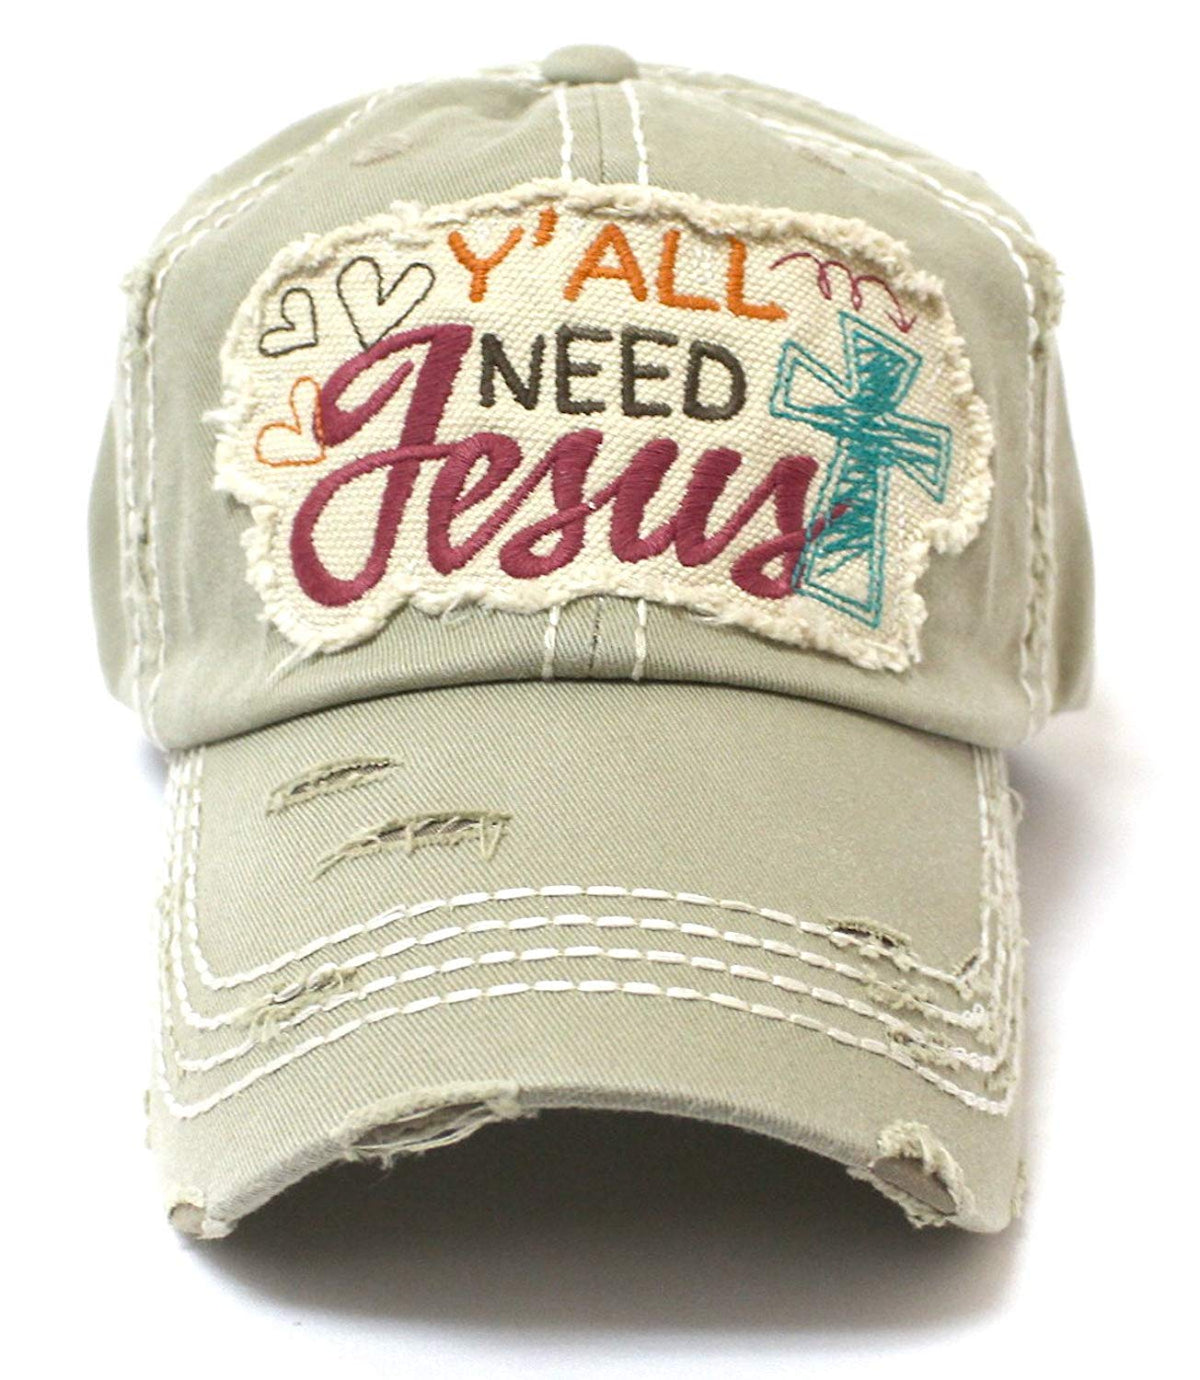 CAPS 'N VINTAGE New Color! Khaki Y'all Need Jesus Graphic Hat - Caps 'N Vintage 